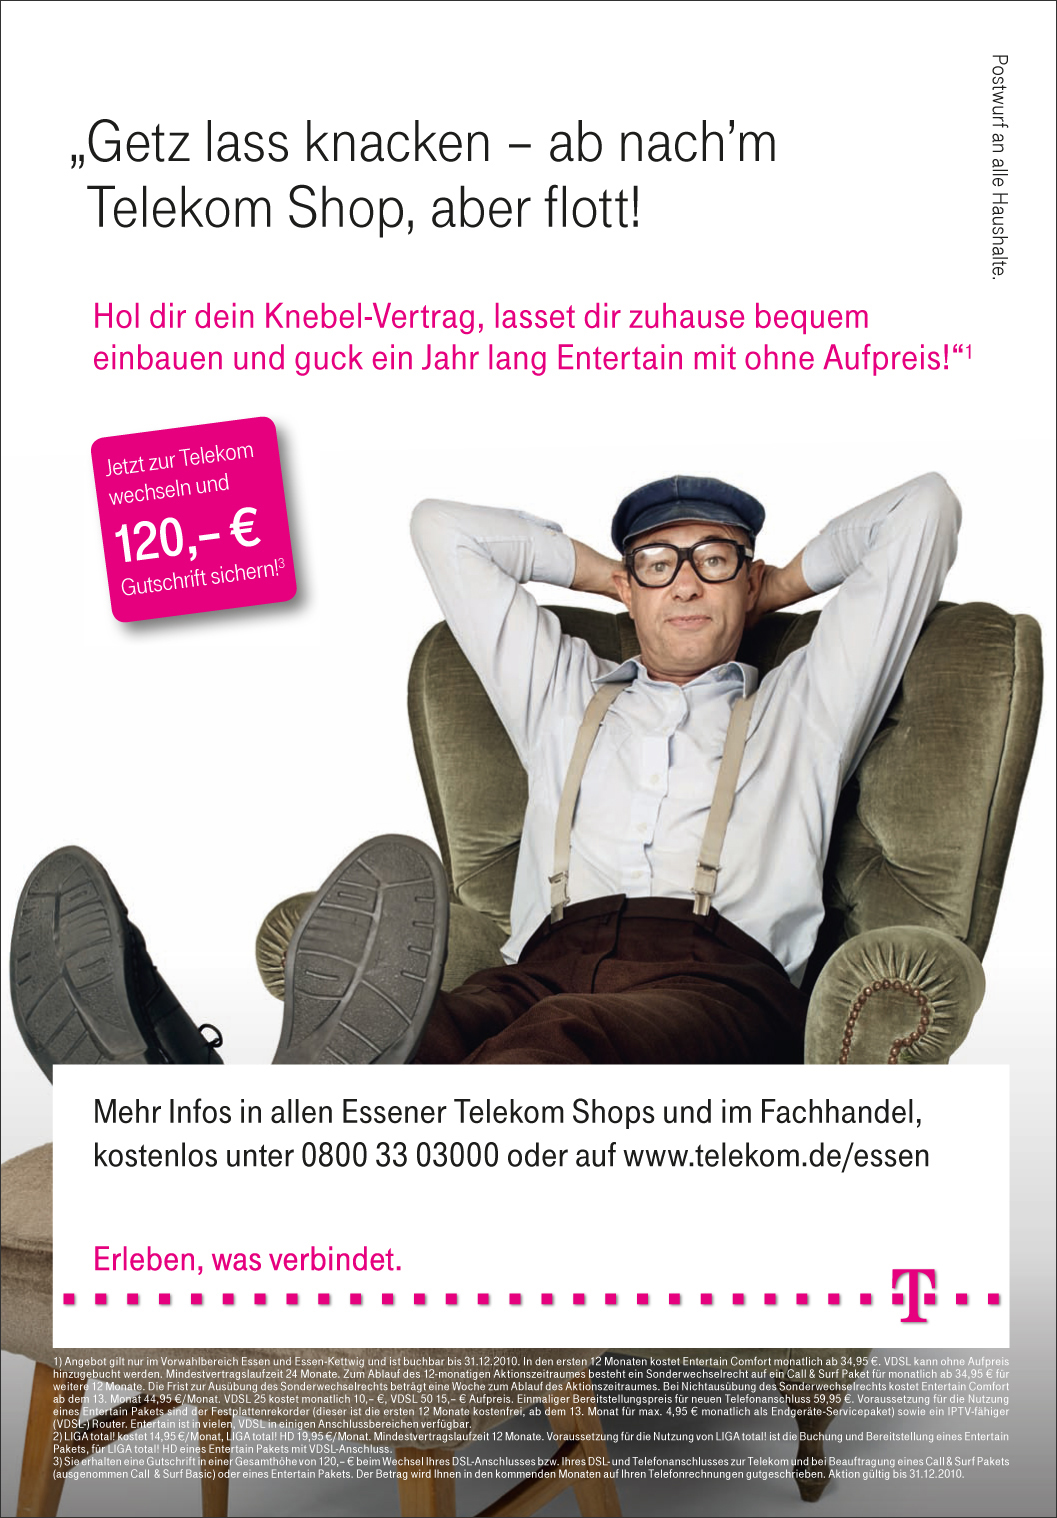 Deutsche Telekom Telekom comedian Herbert Knebel 360° regional Knebelvertrag